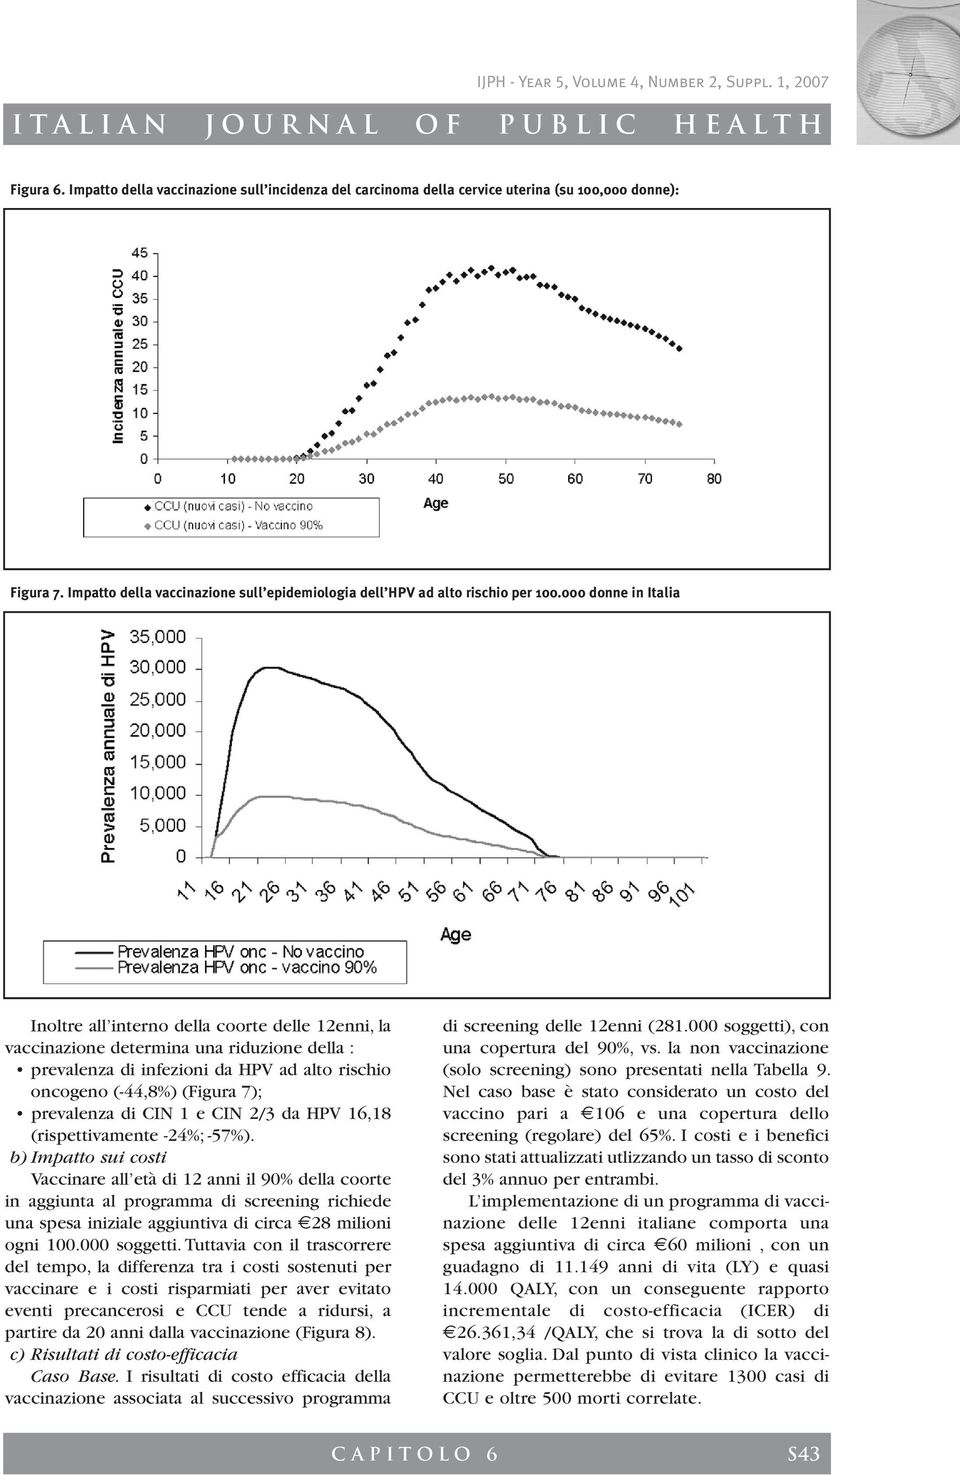 prevalenza di CIN 1 e CIN 2/3 da HPV 16,18 (rispettivamente -24%; -57%).